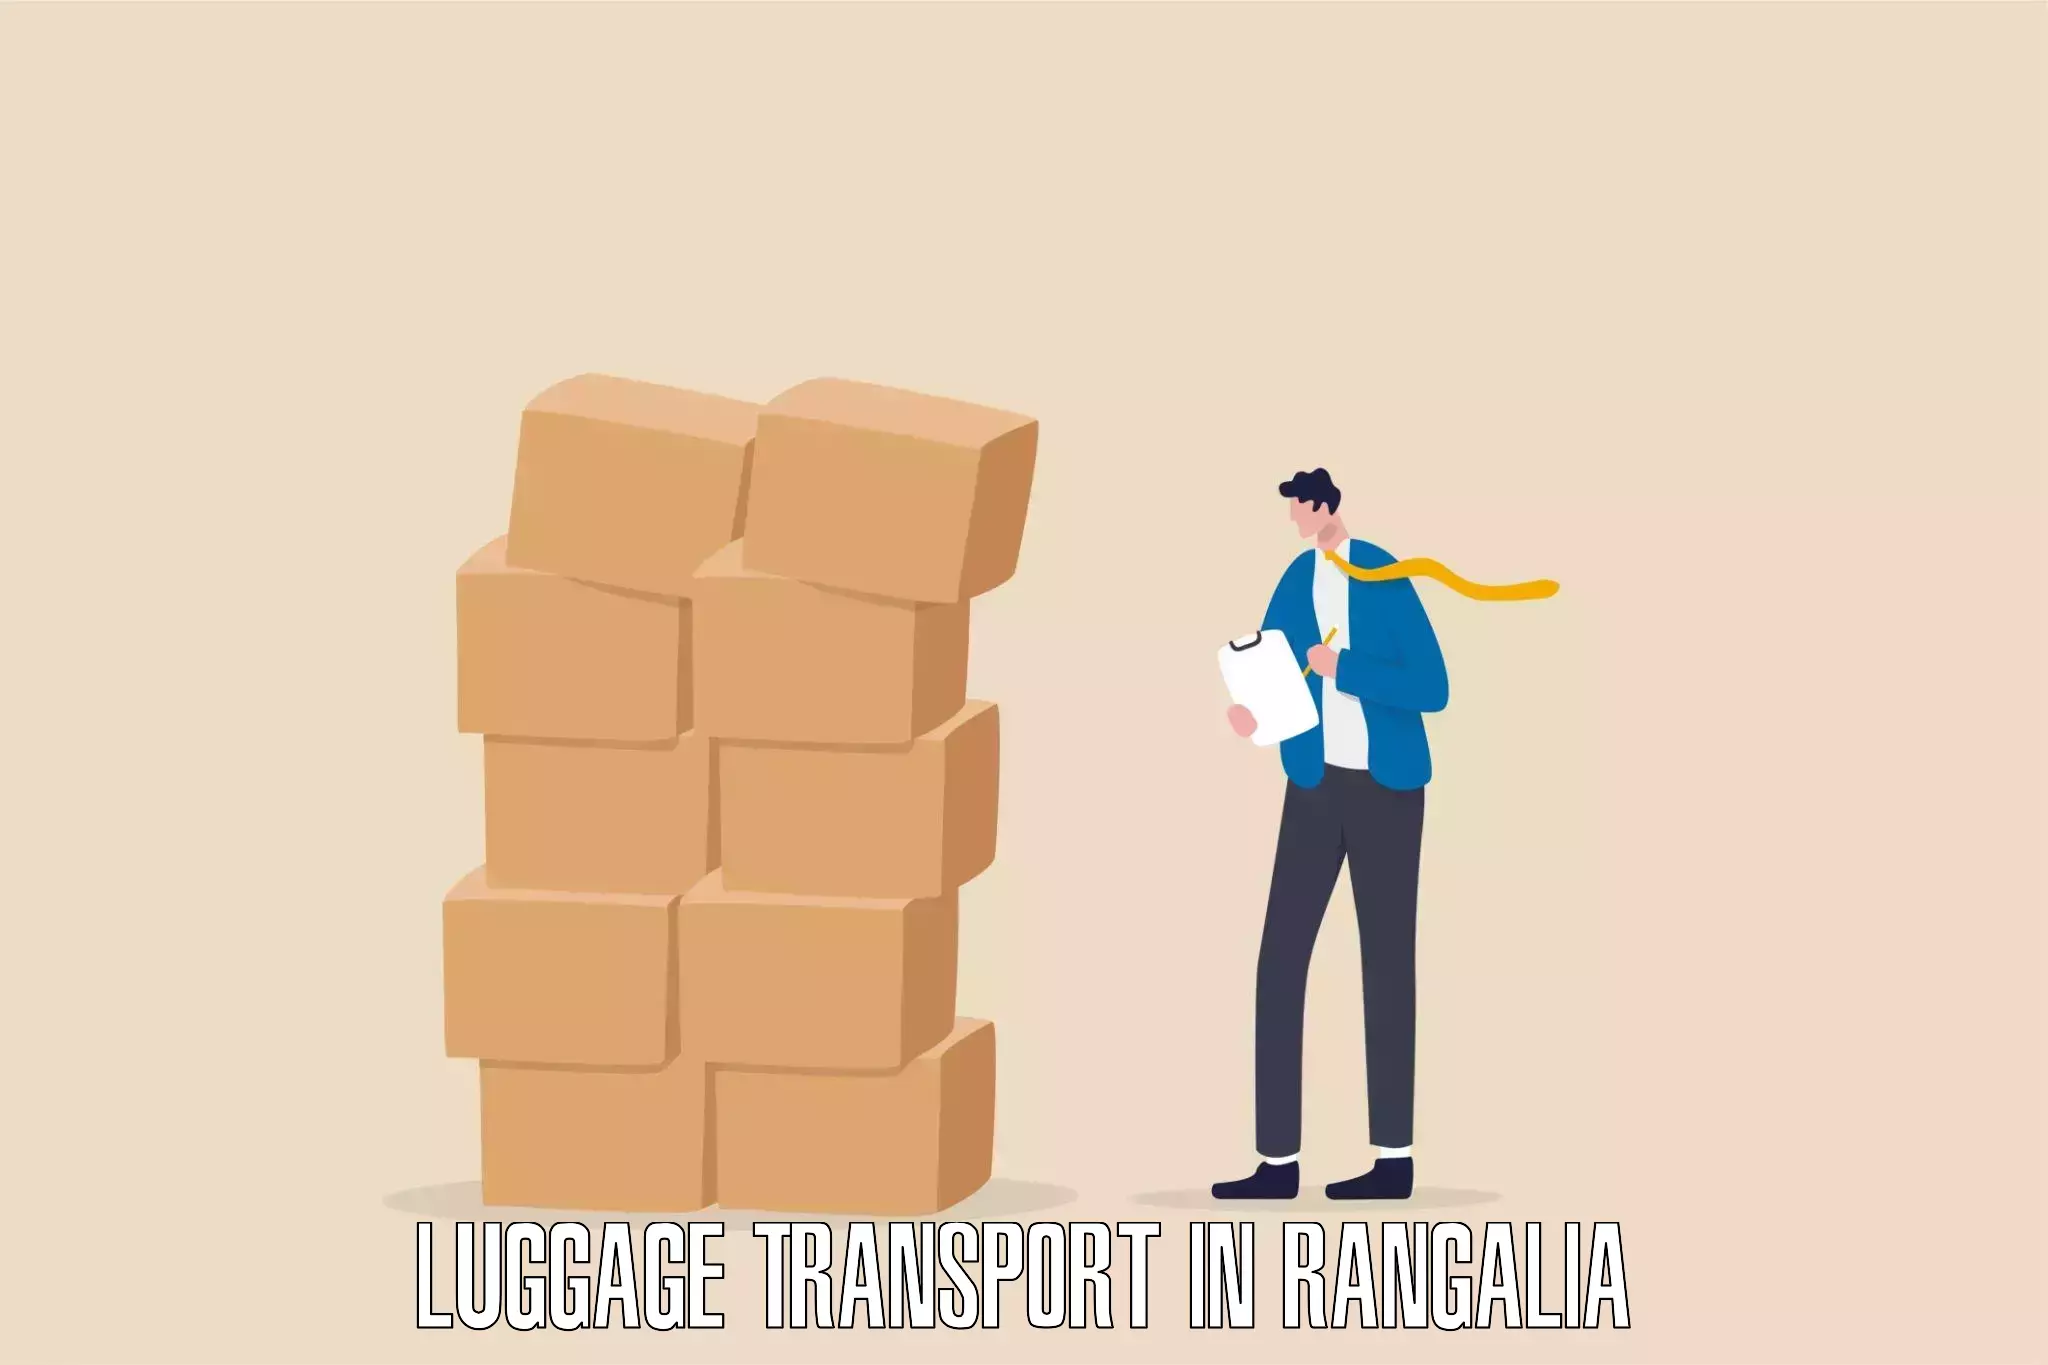 Baggage transport professionals in Rangalia